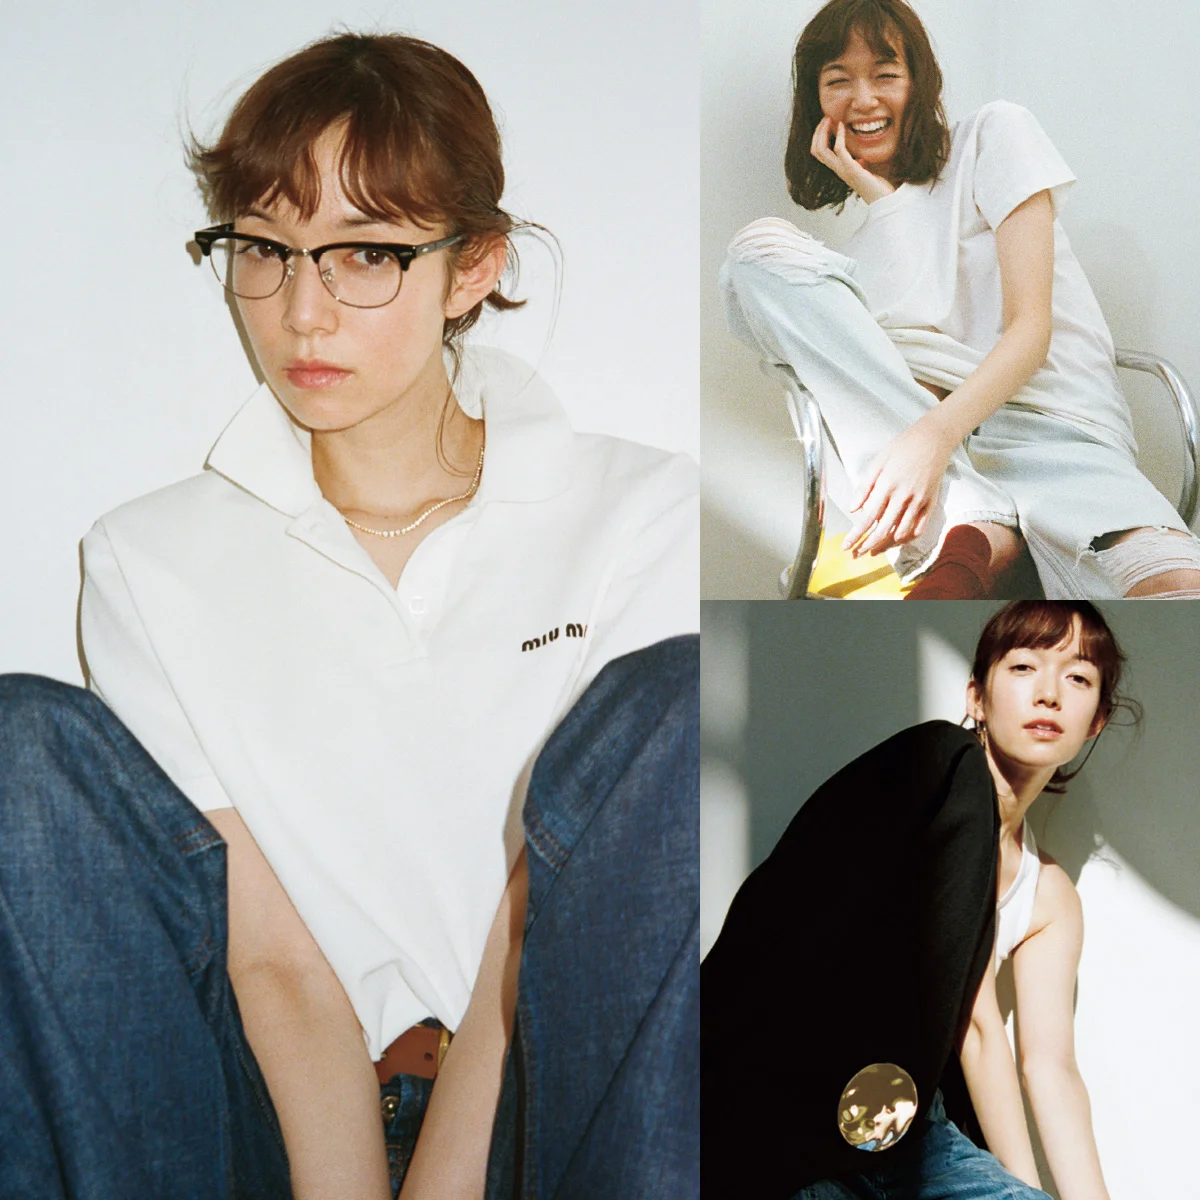 椎名直子と佐藤栞里「これからのモード」を考える。好きな服でなりたい私になるために